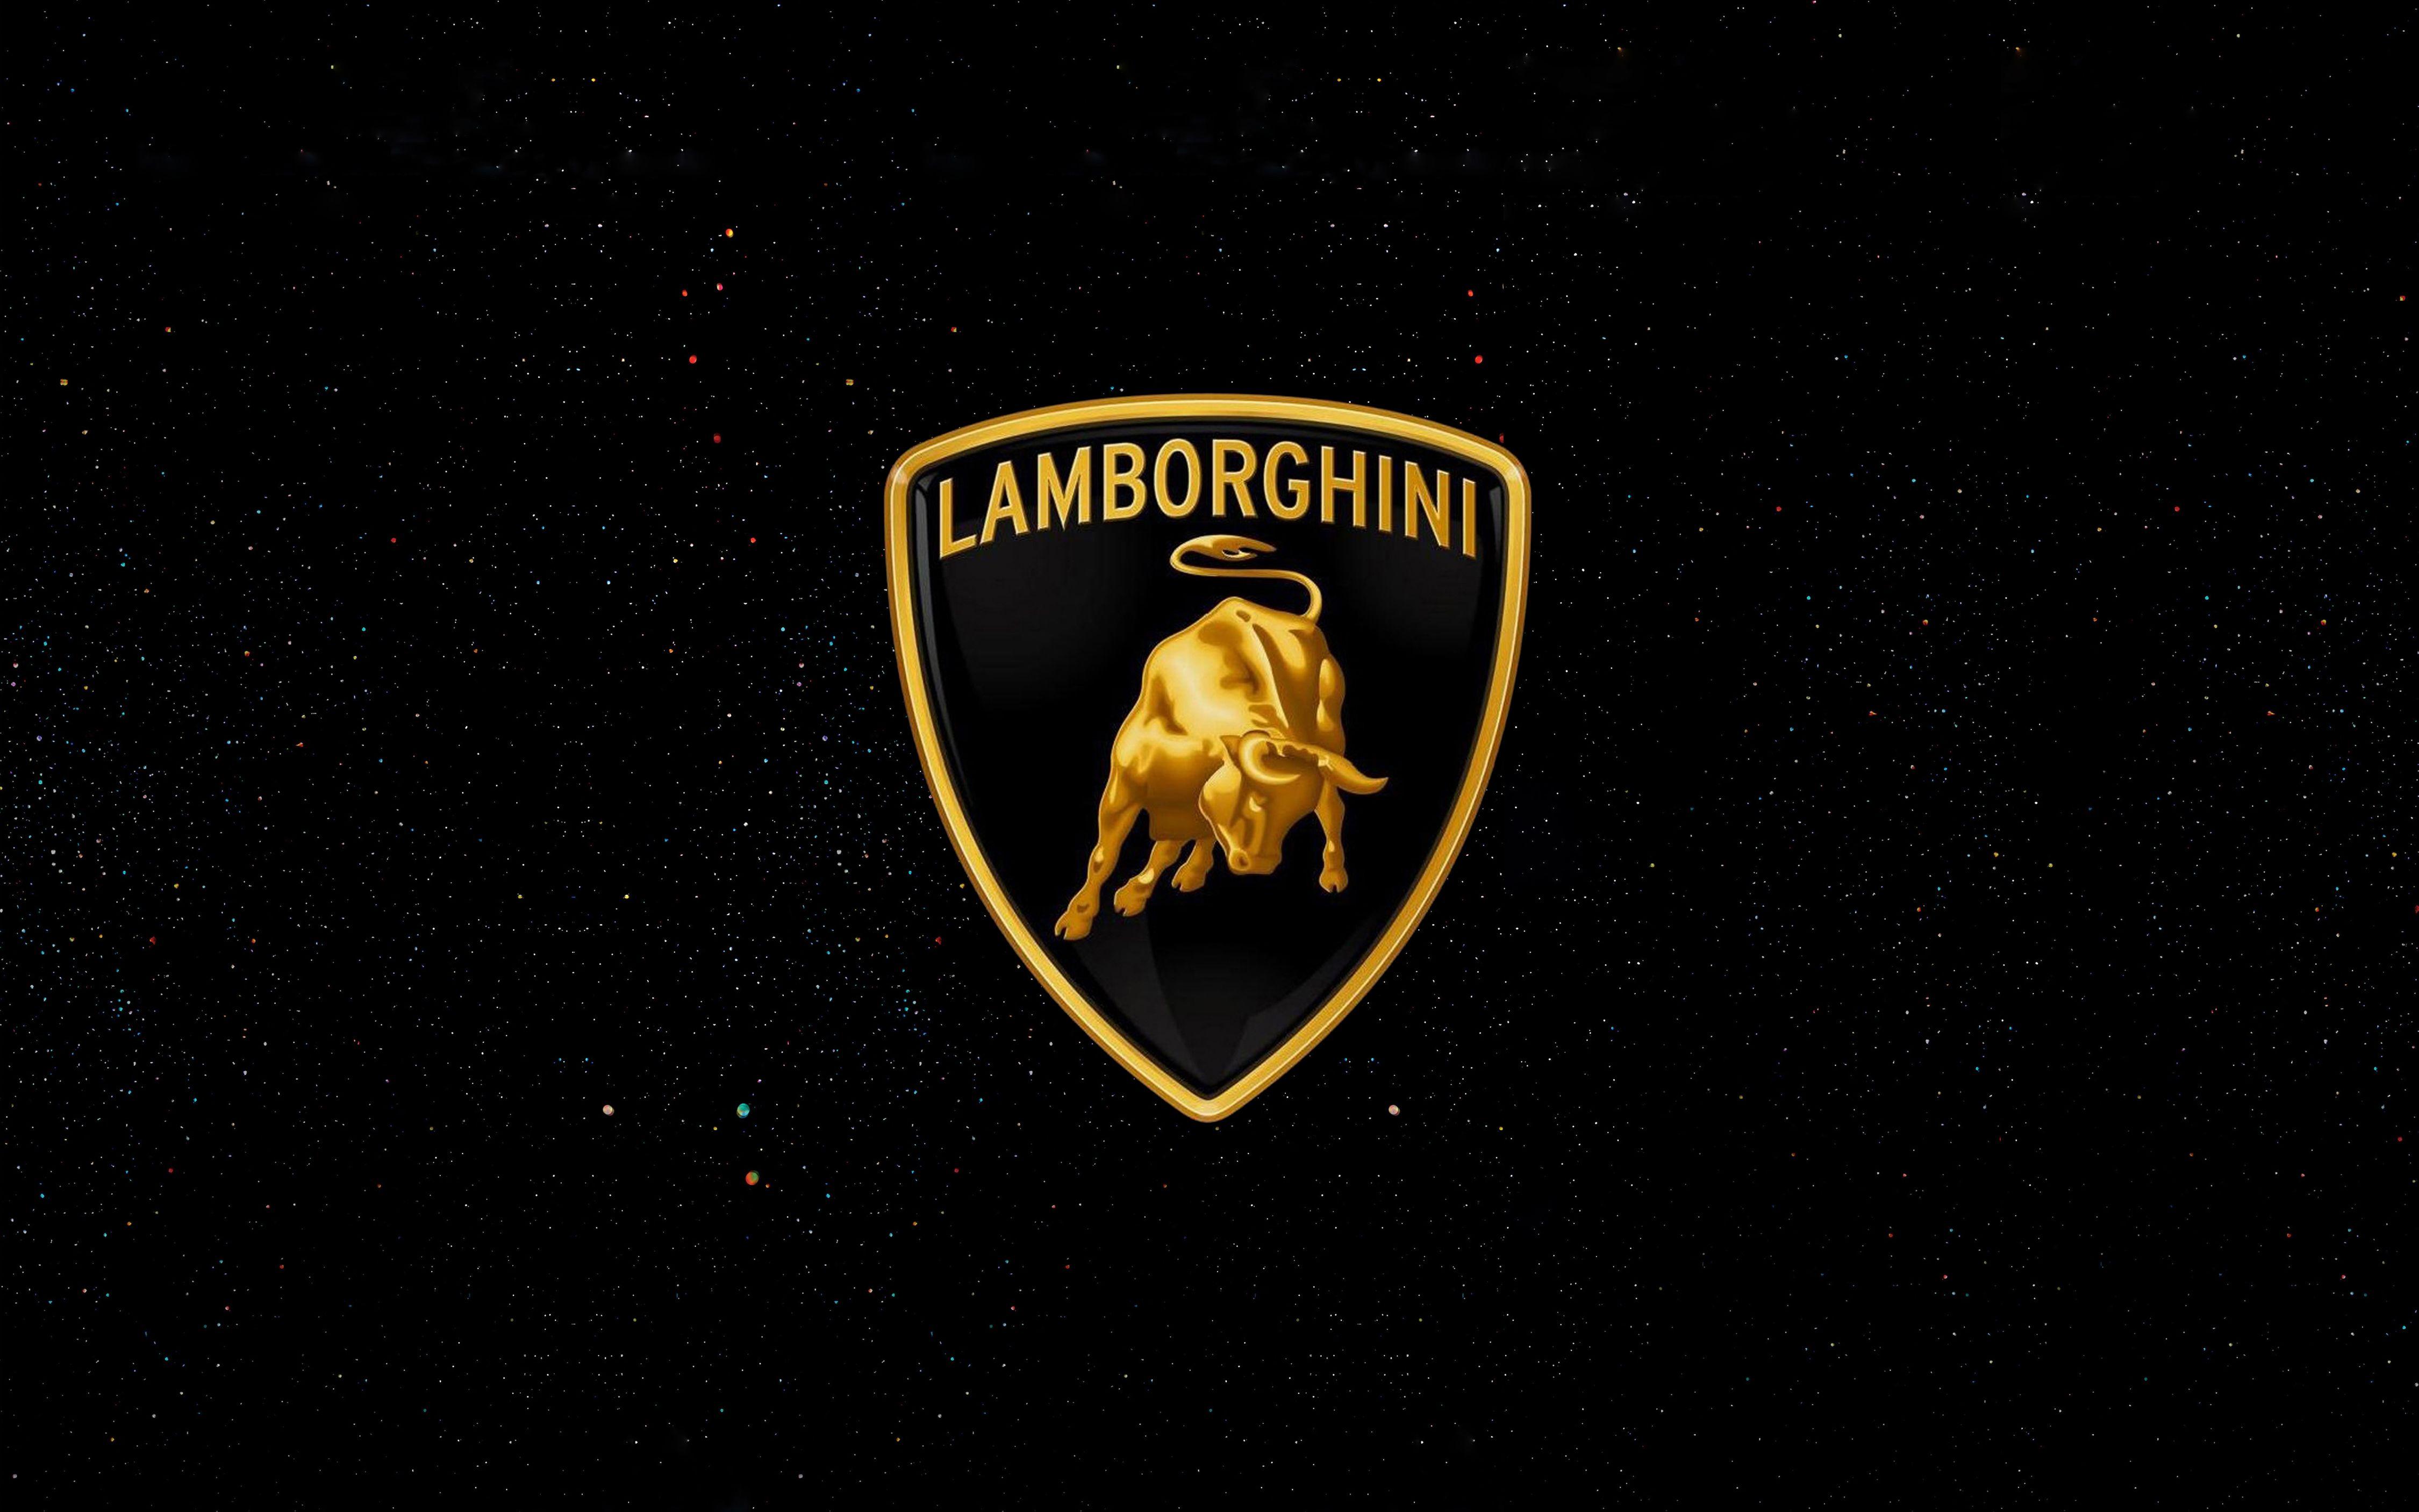 Lamborghini Car.